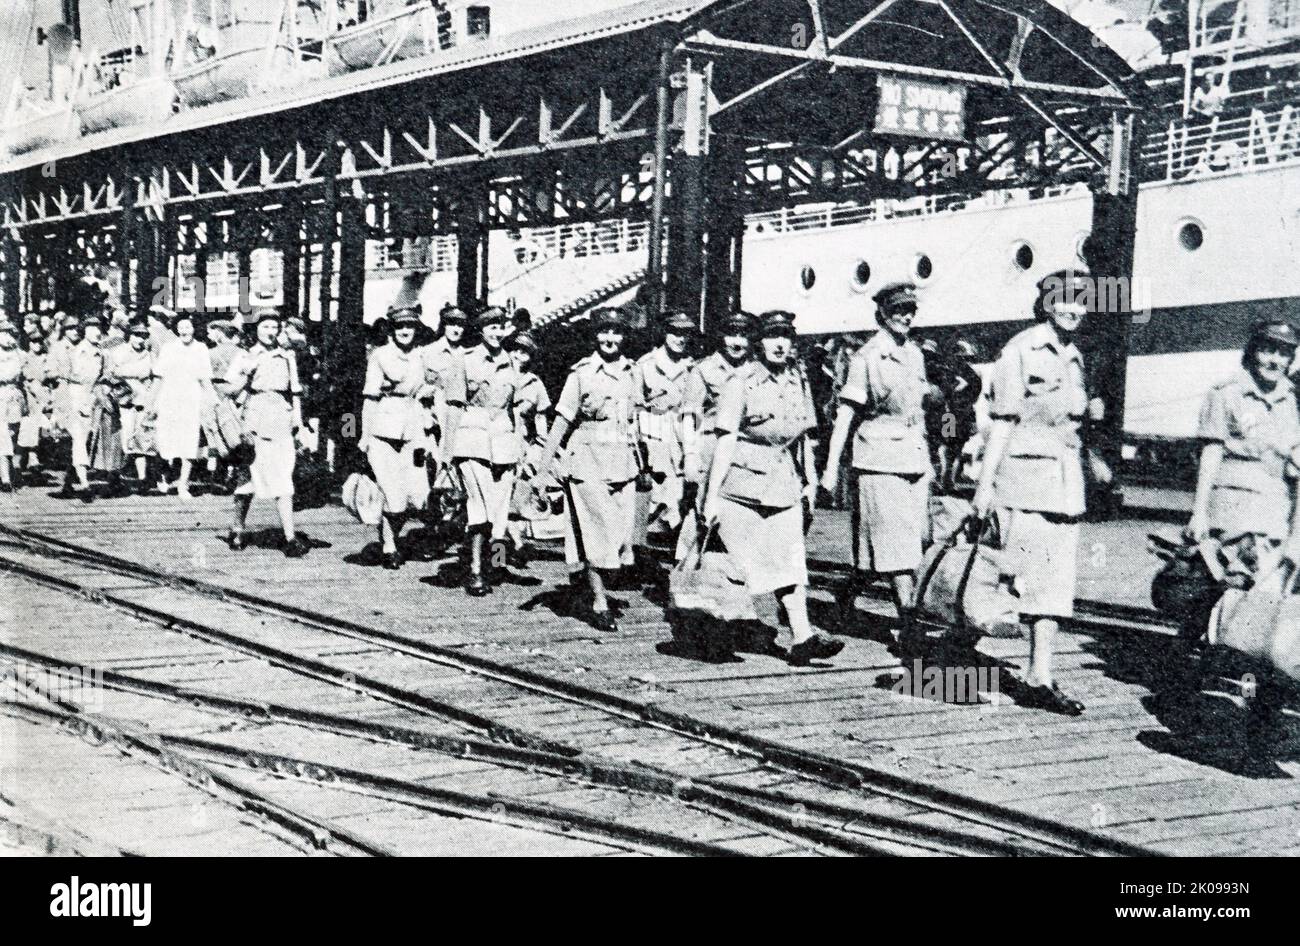 Britische medizinische Abteilungen, die in Hongkong eintreffen, Krankenschwestern in tropischer Uniform, die am Dock aussteigen. Stockfoto